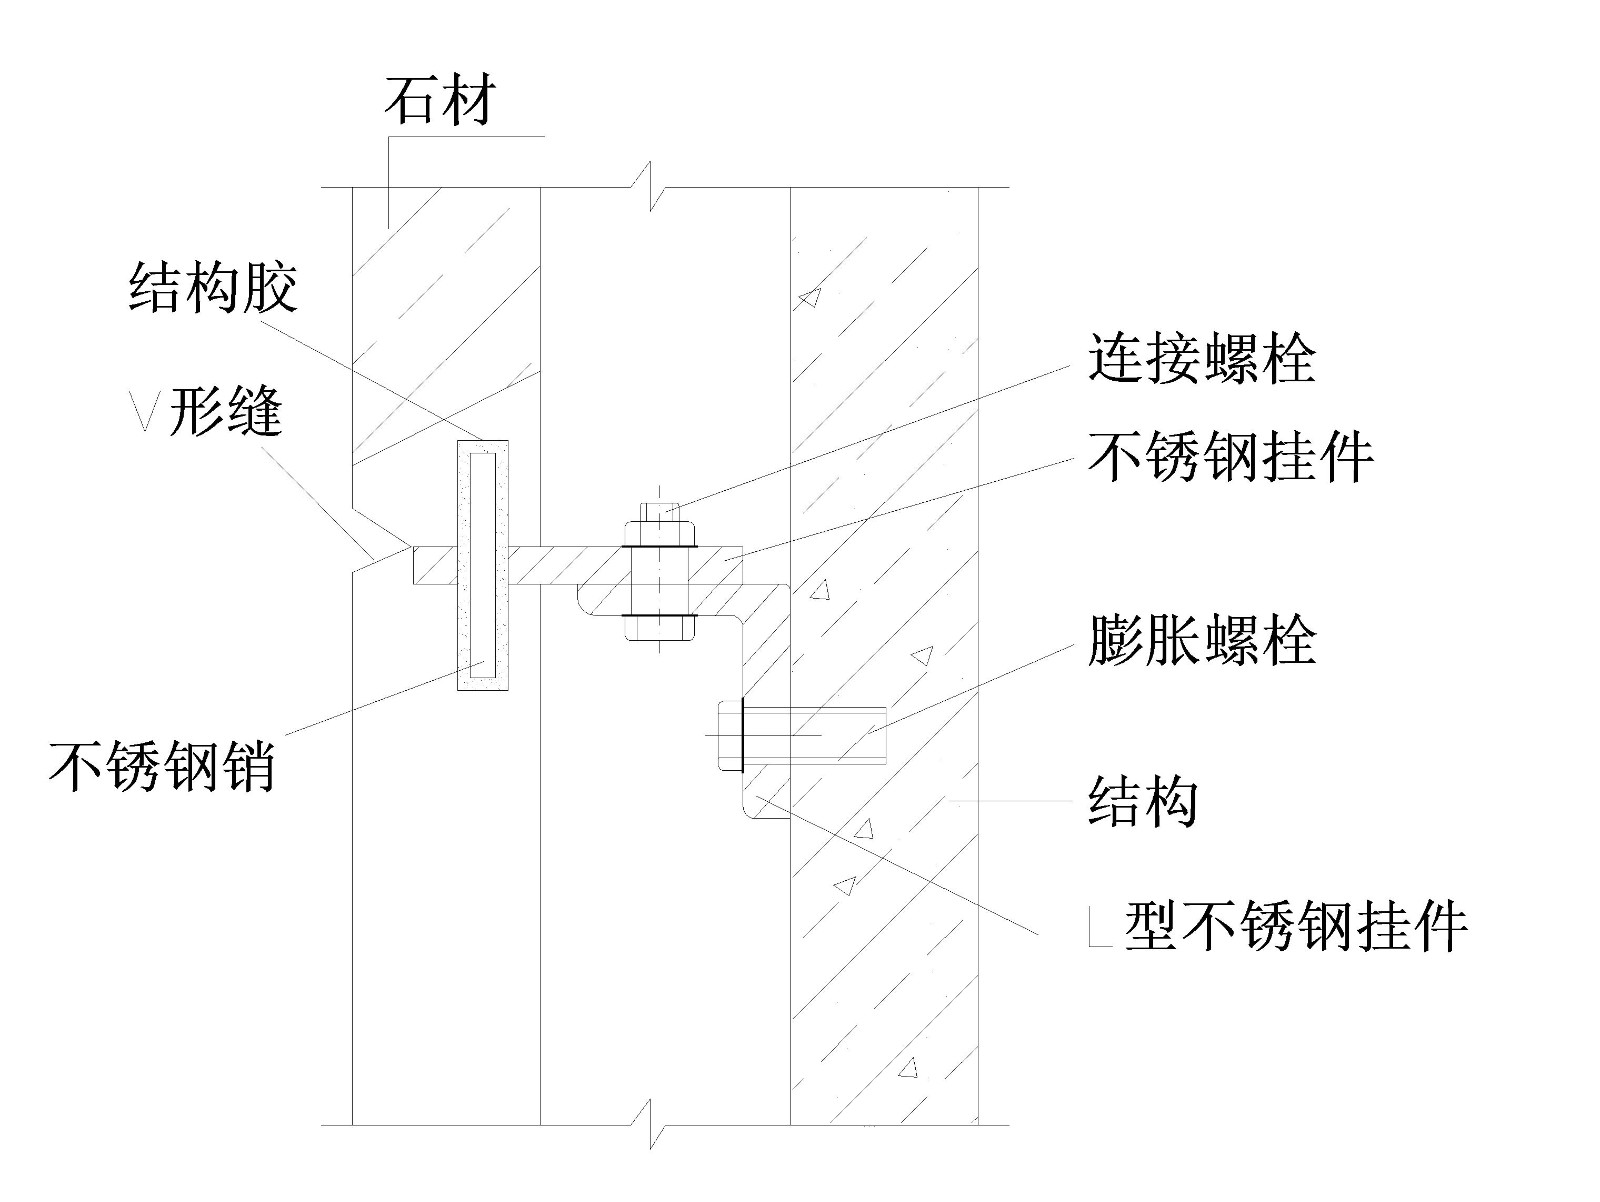 北京某高层办公楼工程干挂石材安装典型节点图